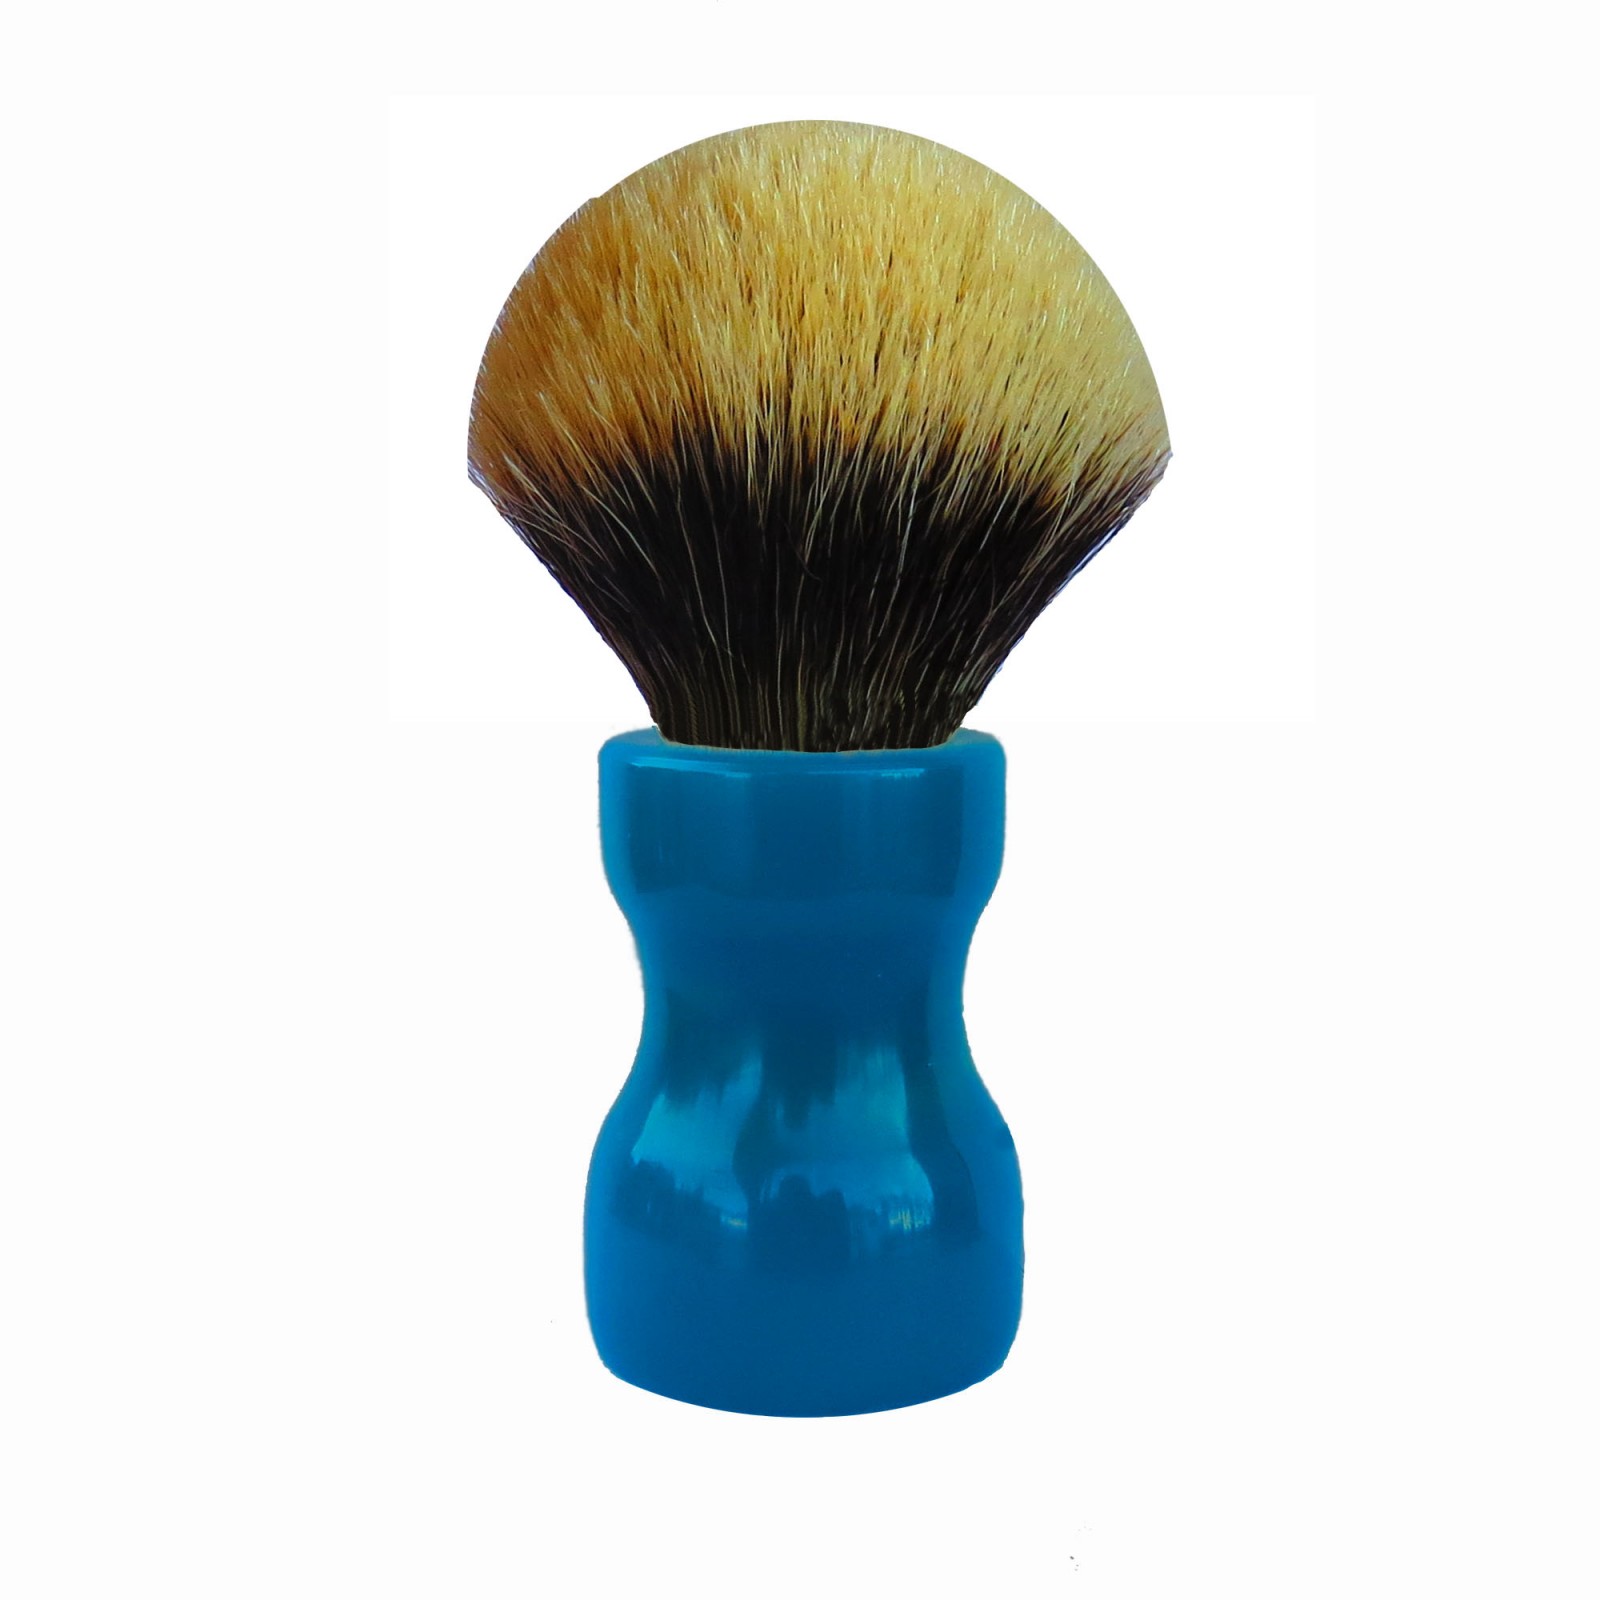 Handmade resin shaving brush 28mm blue